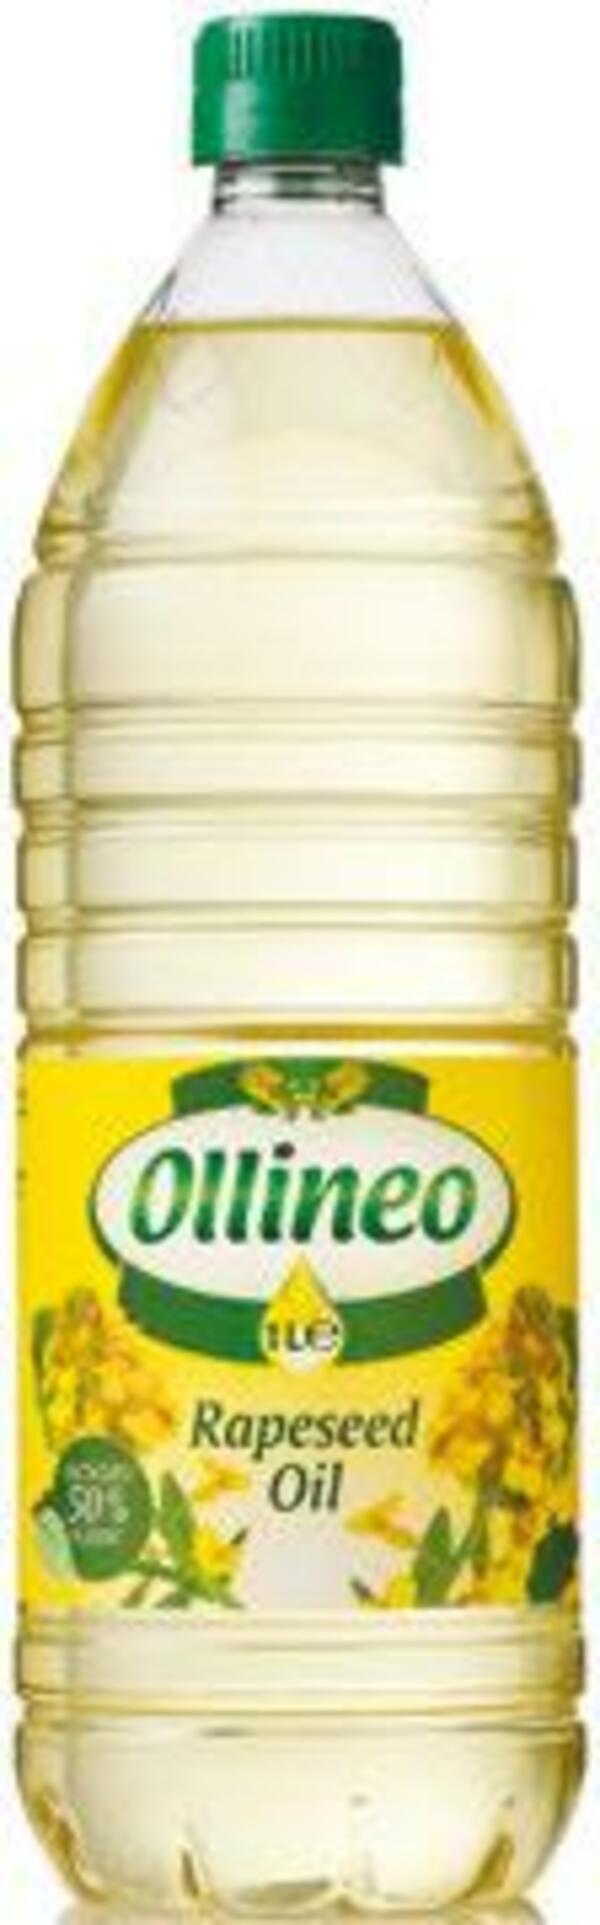 Bild 1 von 2 Flaschen Ollineo Rapsöl